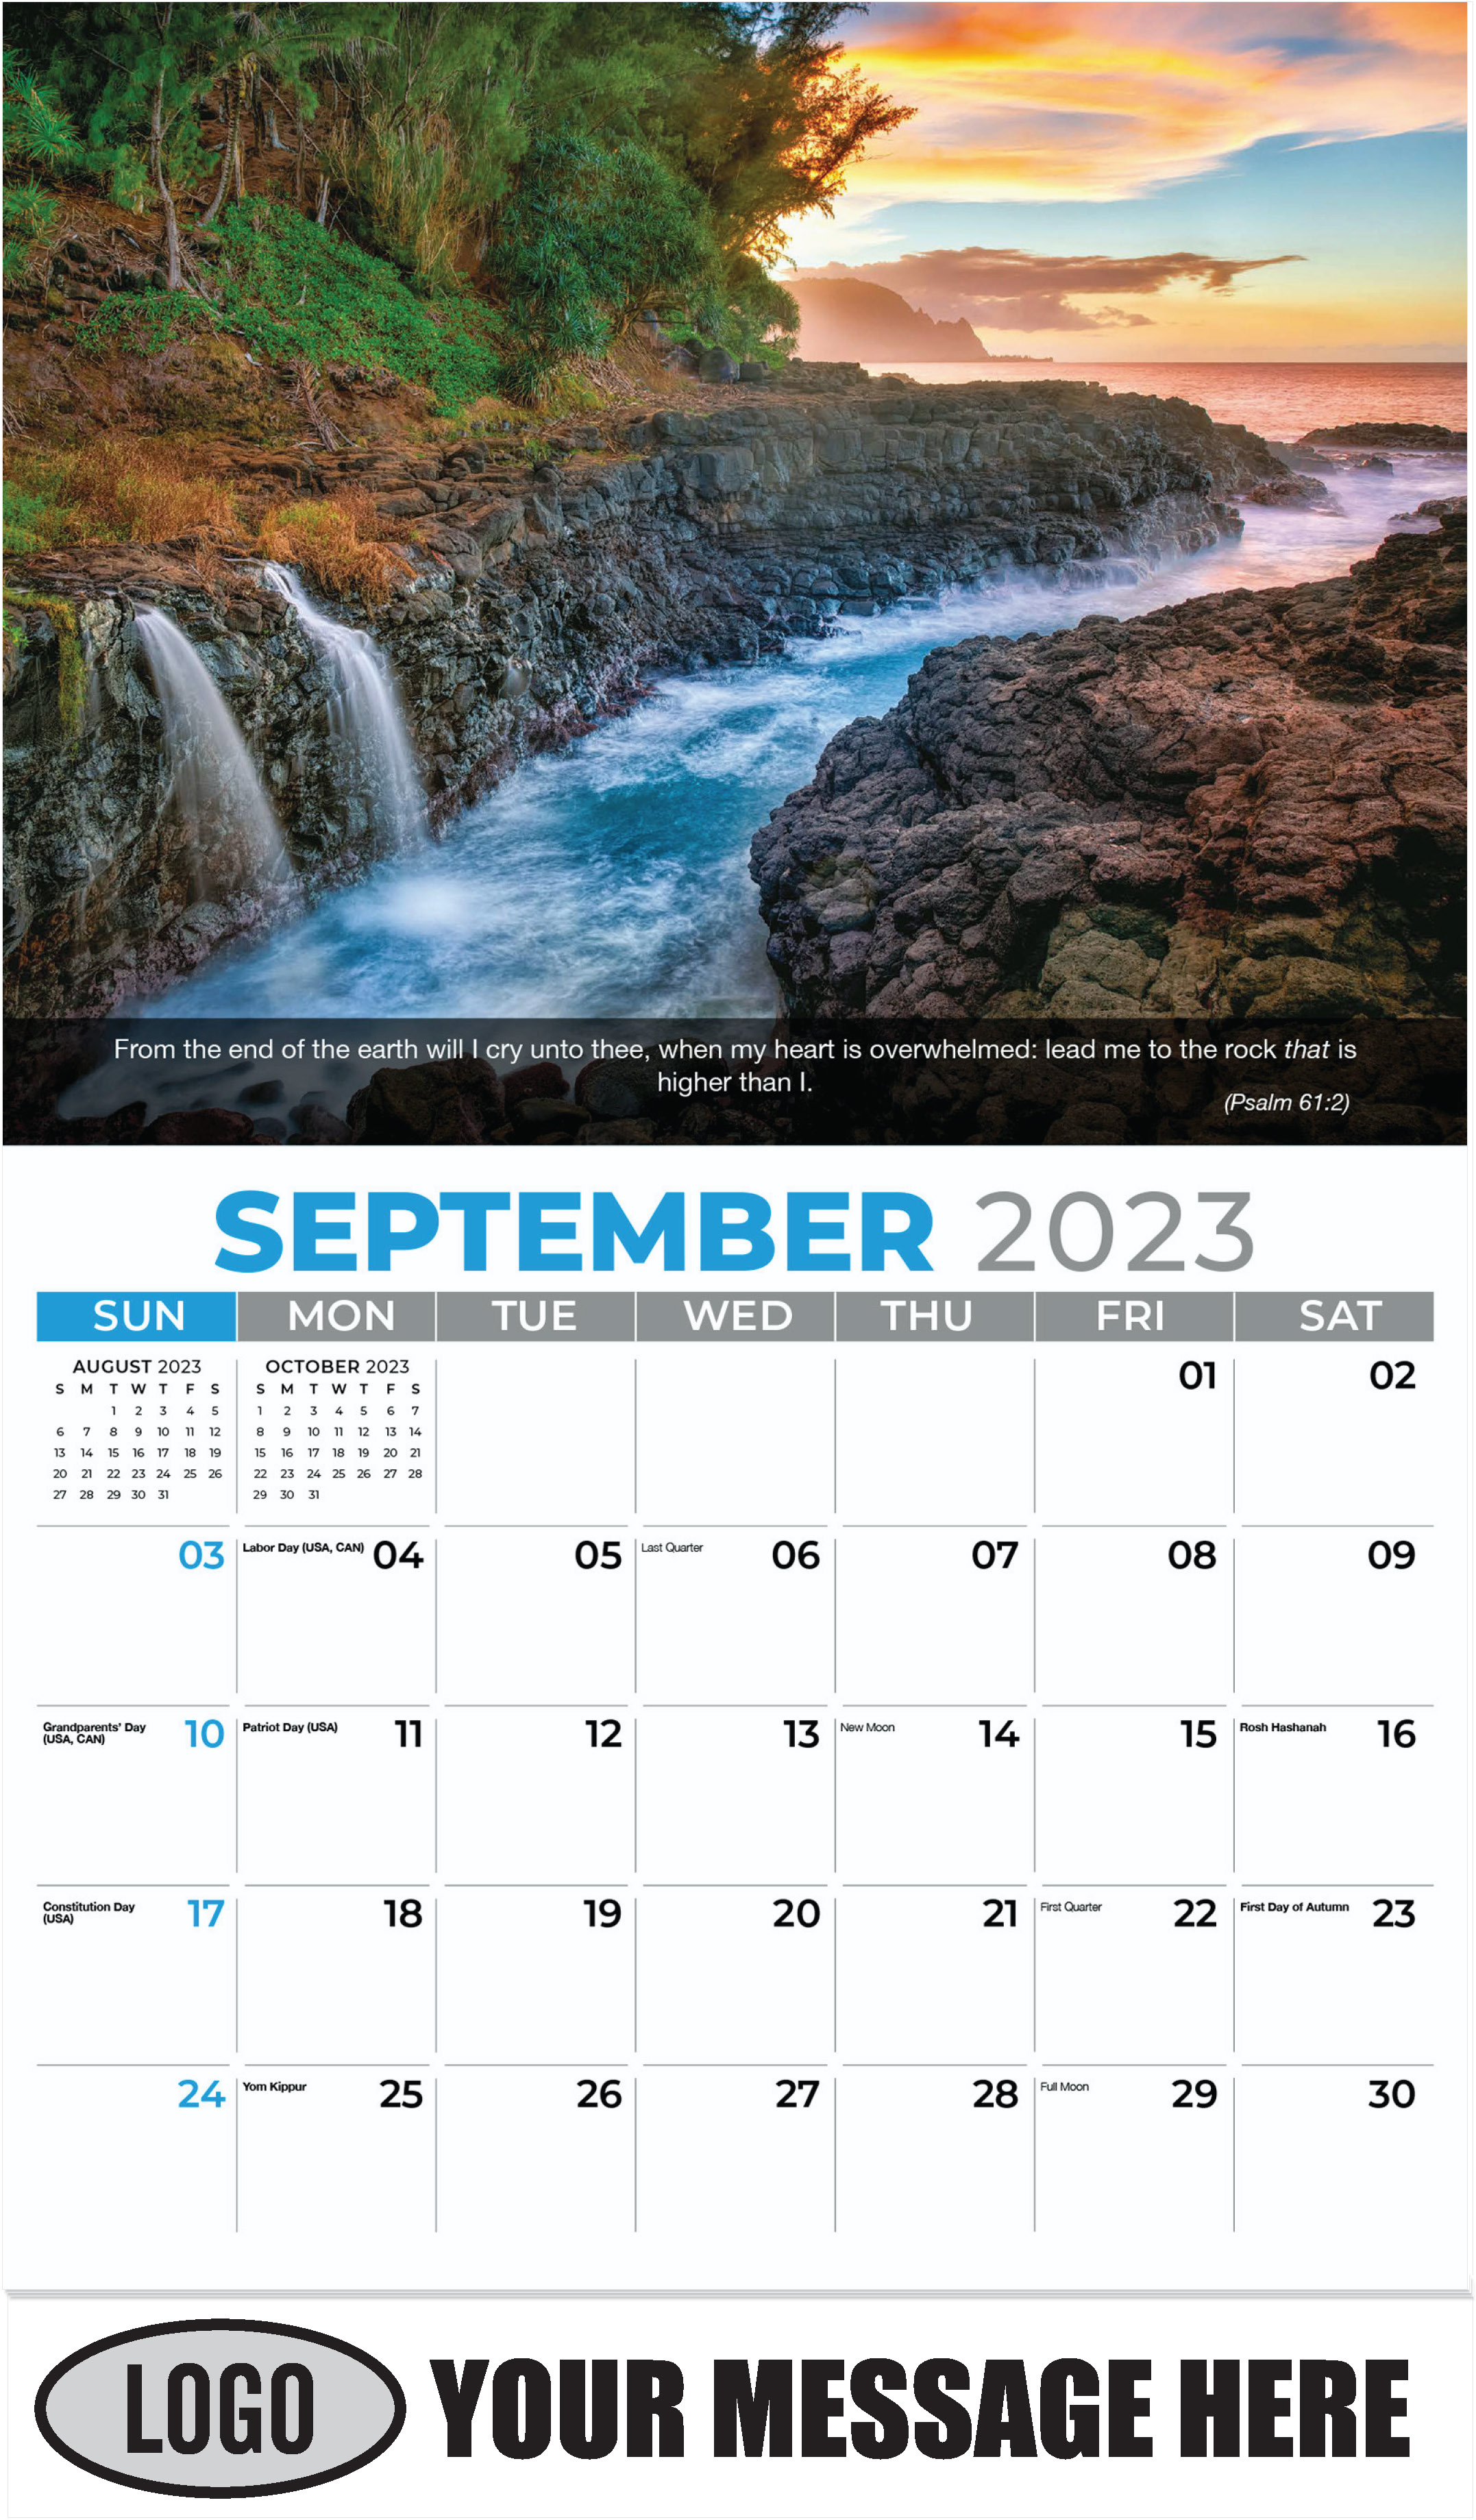 Queen's Bath Waterfalls. Kauai, Hawaii - September - Faith Passages 2023 Promotional Calendar